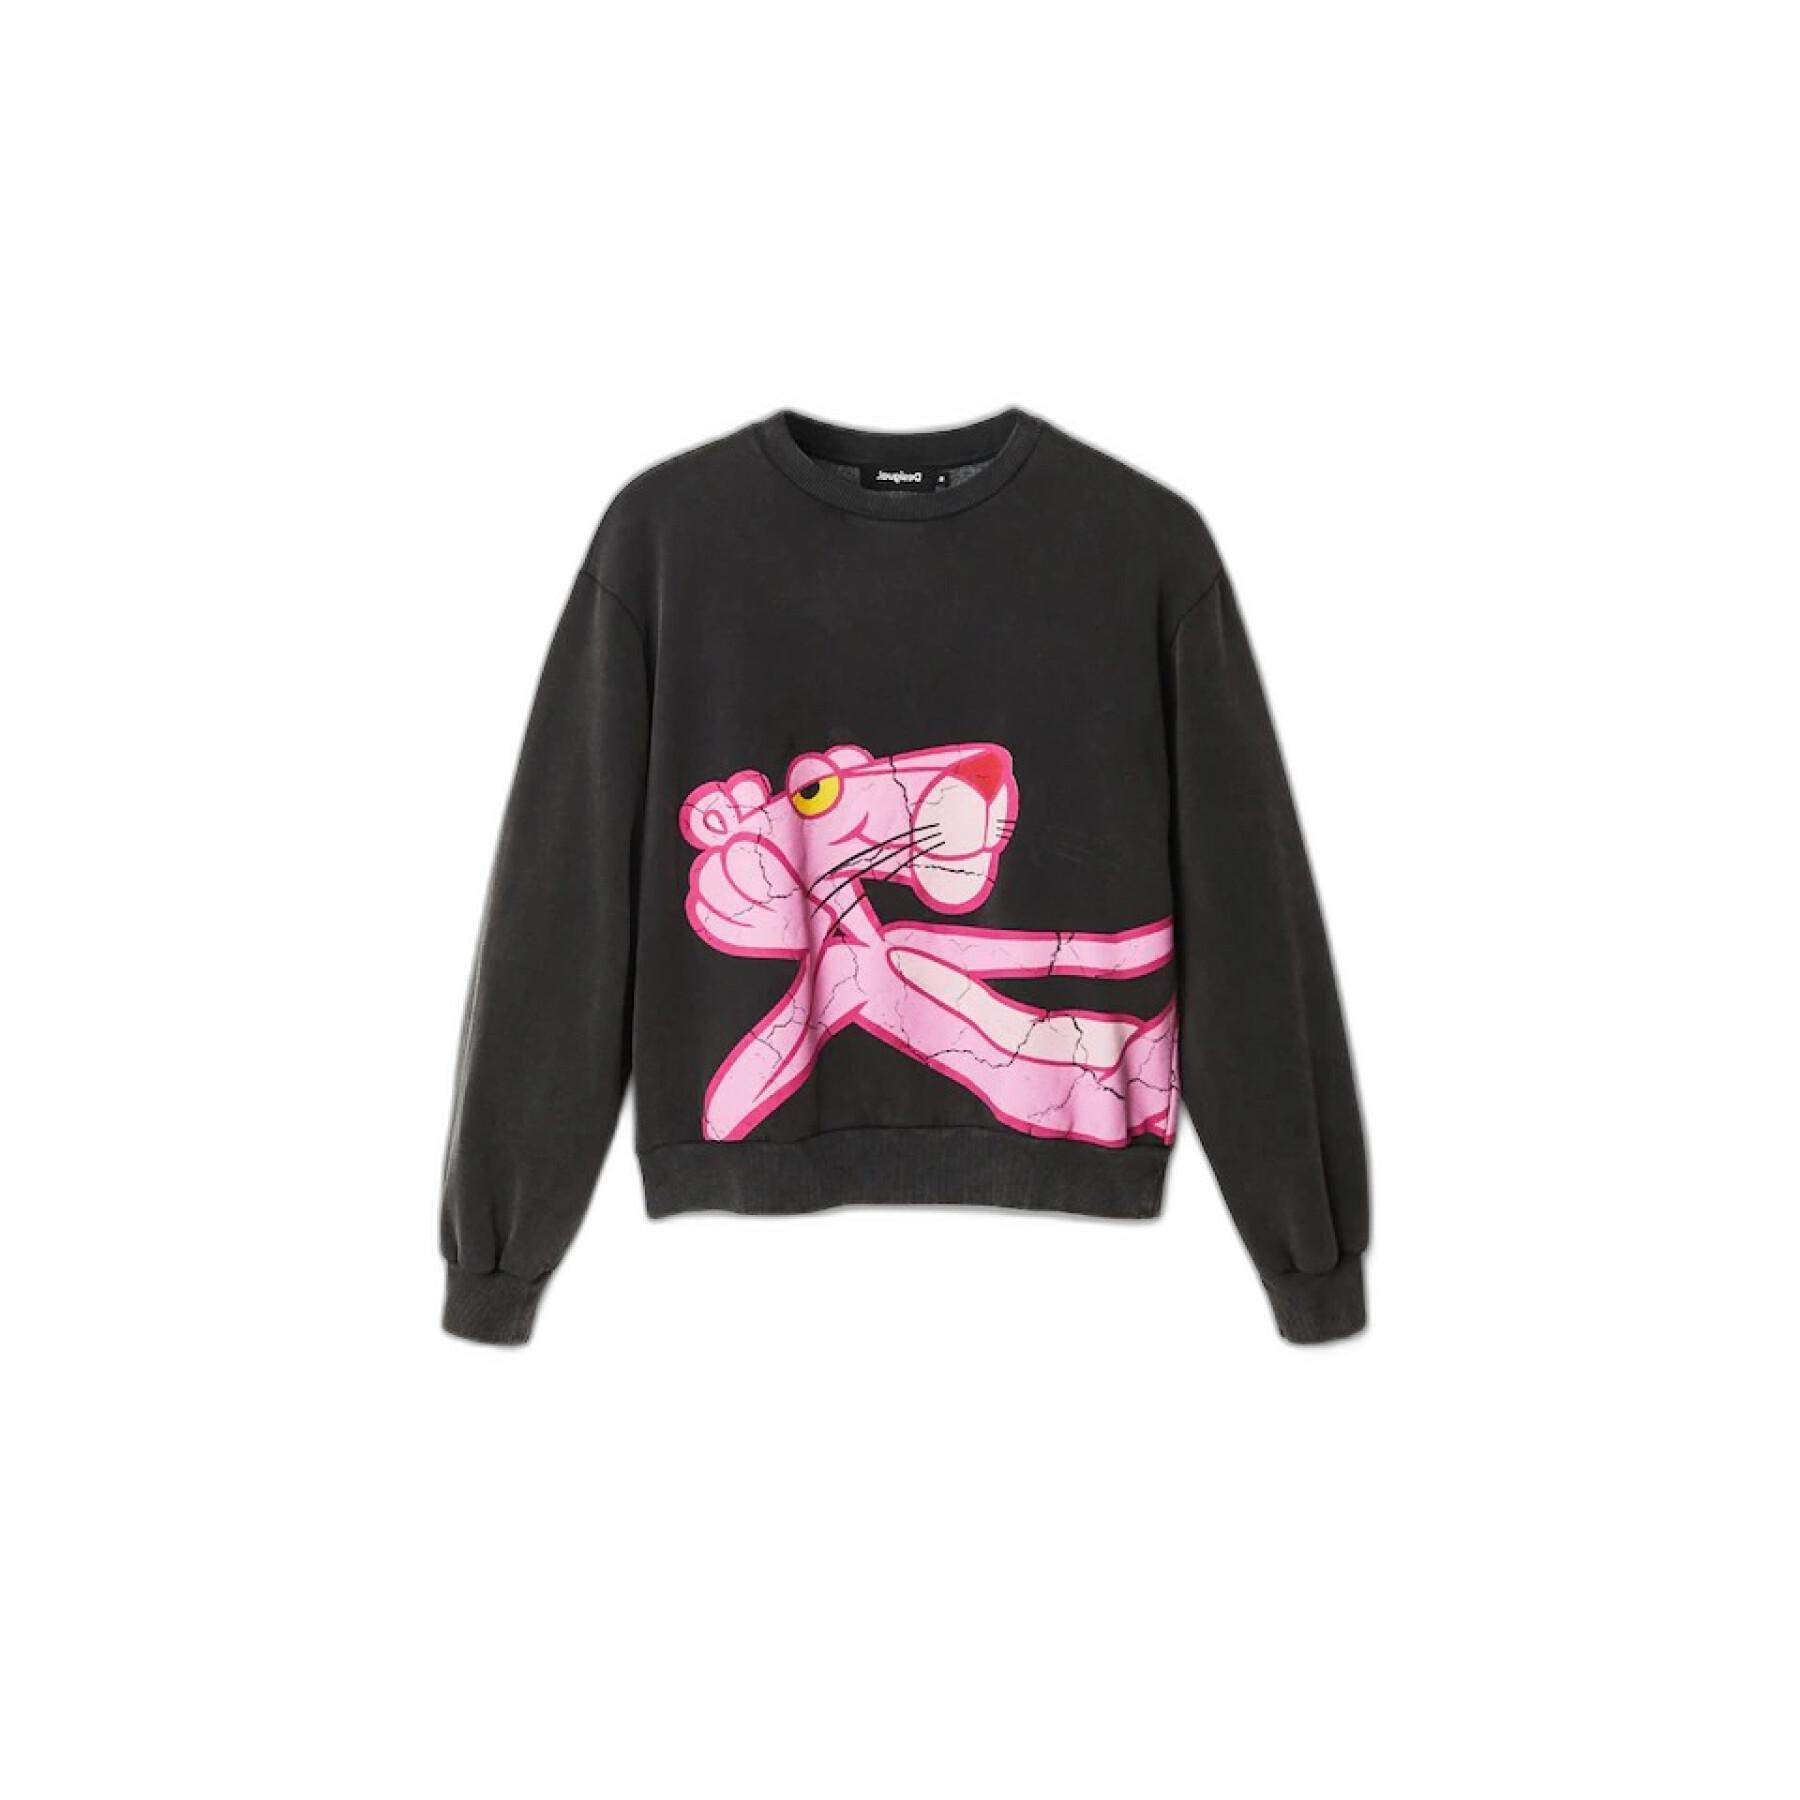 Sweatshirt woman Desigual Pink panther